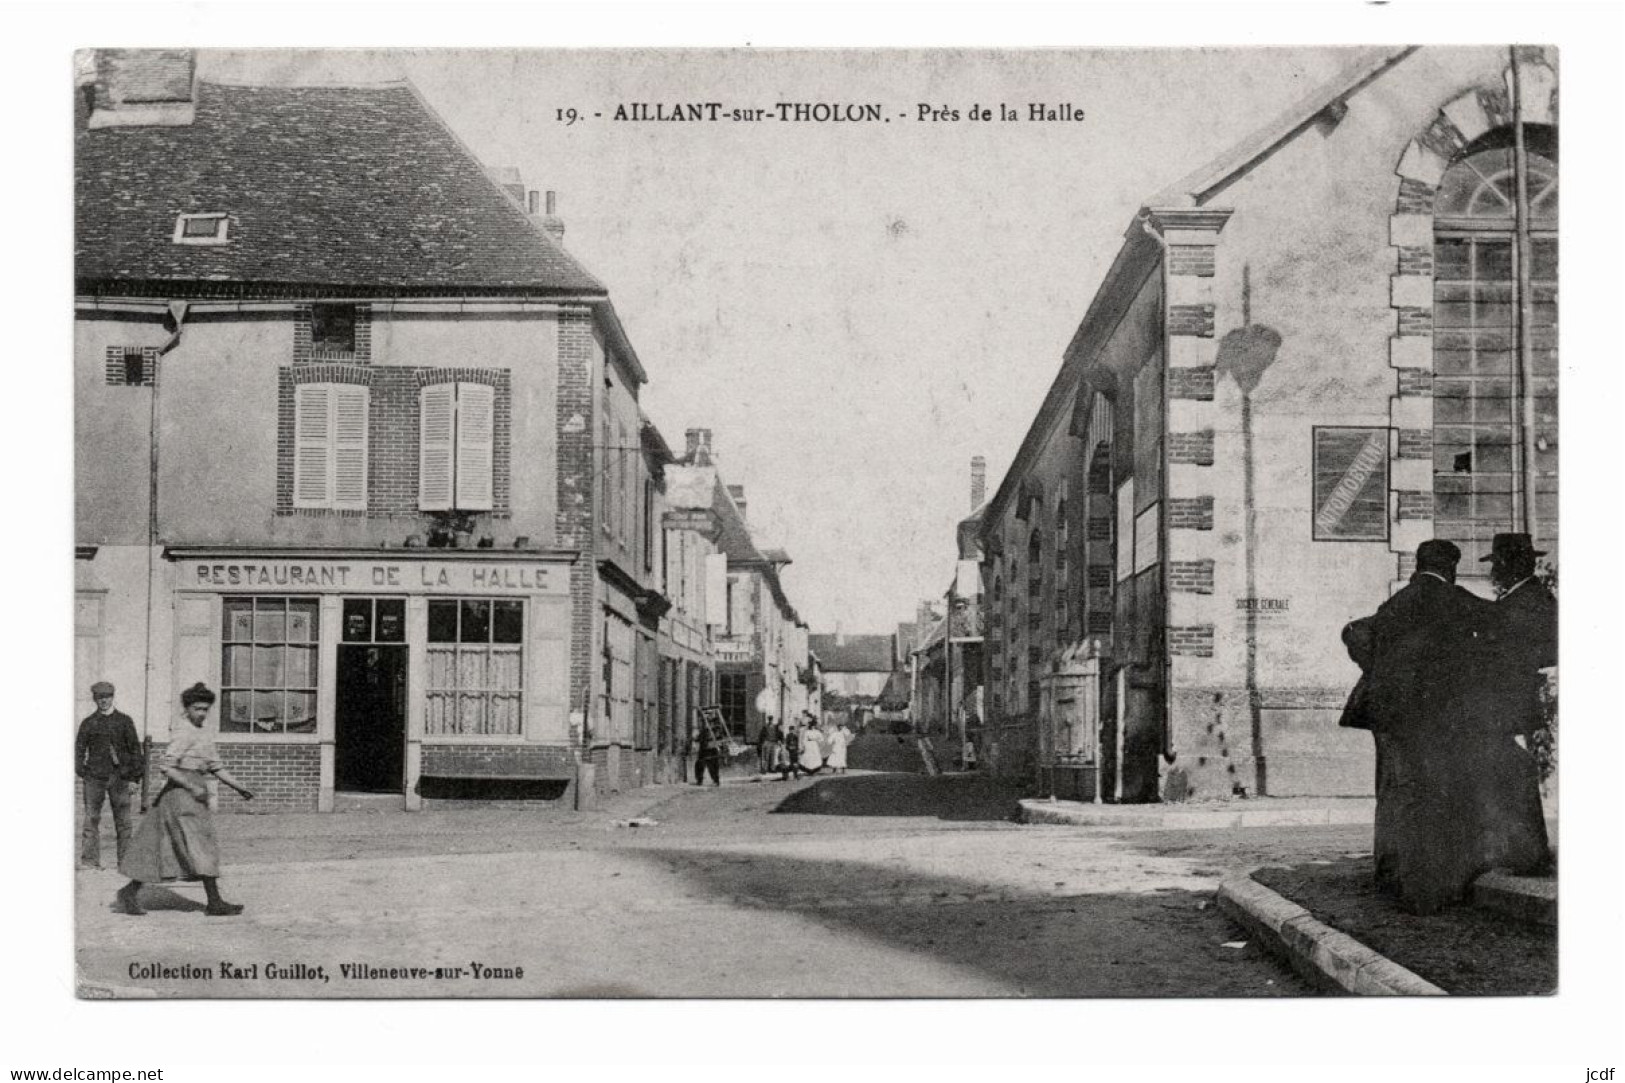 89 AILLANT SUR THOLON Près De La Halle N° 19 - Coll. Karl Guillot 1923 - Restaurant De La Halle ( Vieux Puits ) - Animée - Aillant Sur Tholon